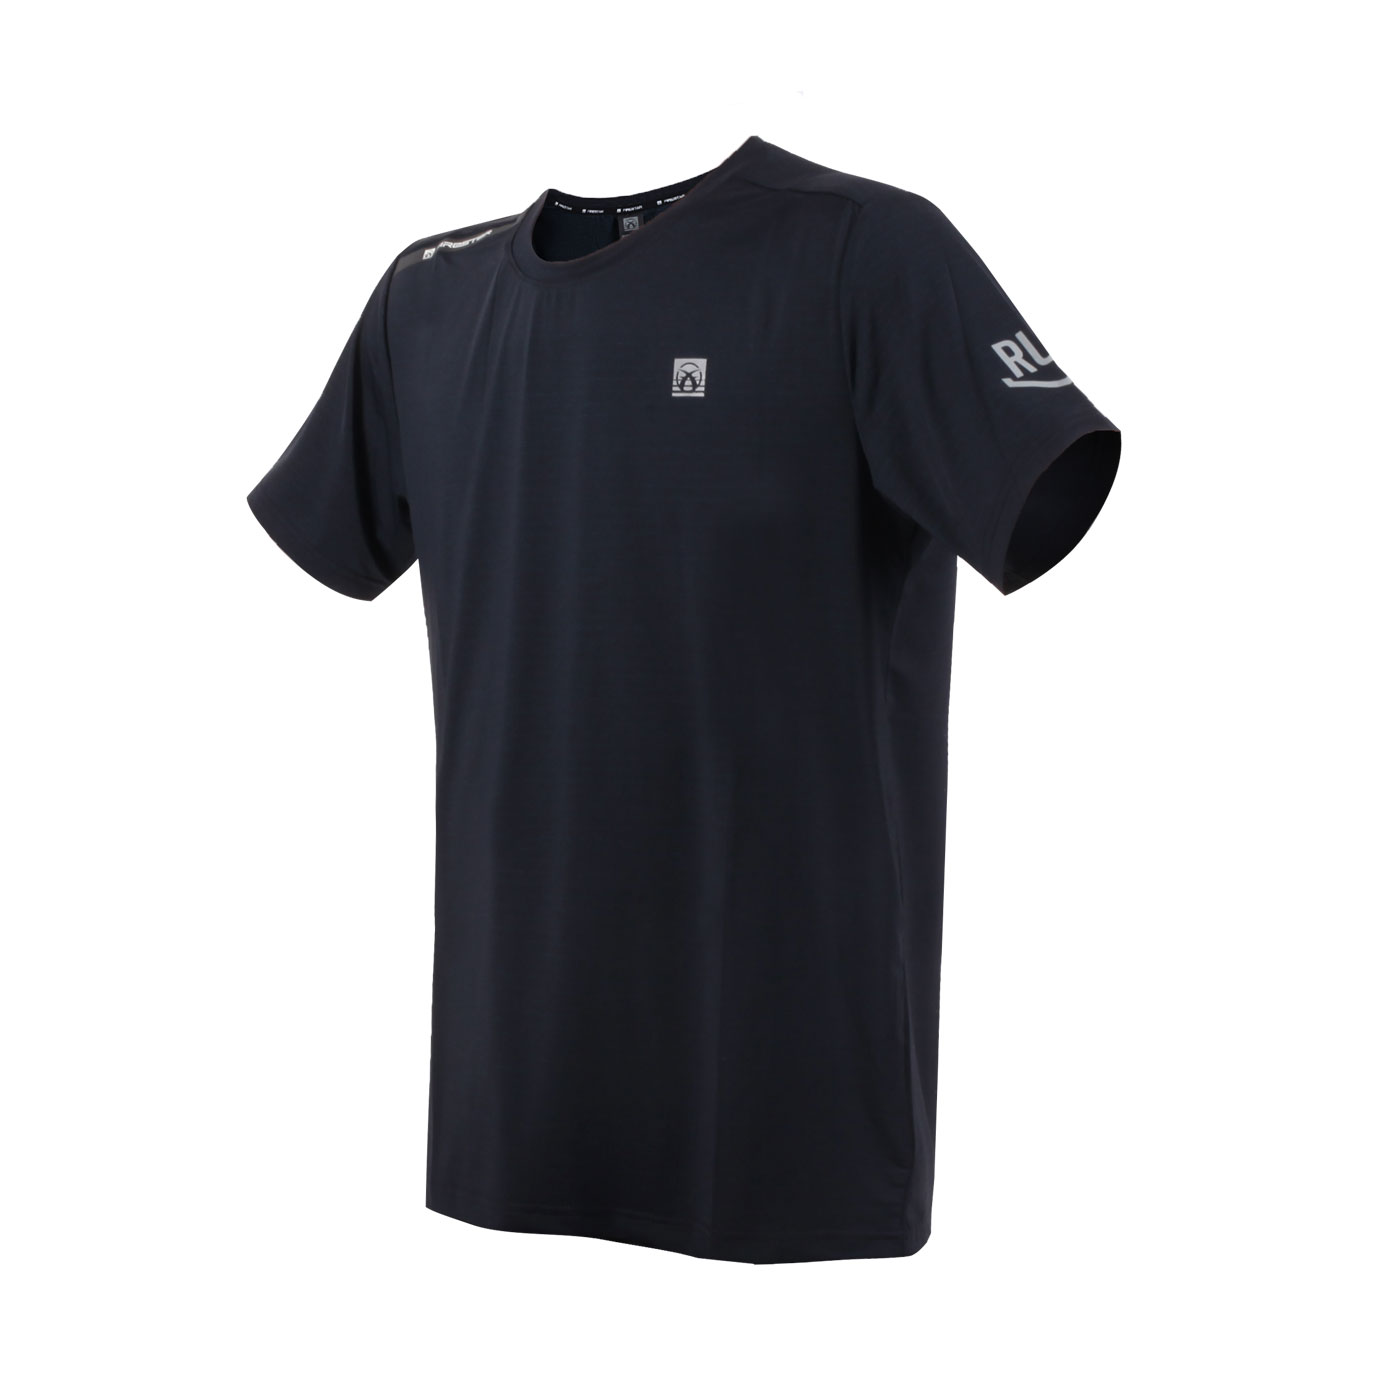 FIRESTAR 男款彈性圓領短袖T恤  D3230-98 - 黑條紋藍